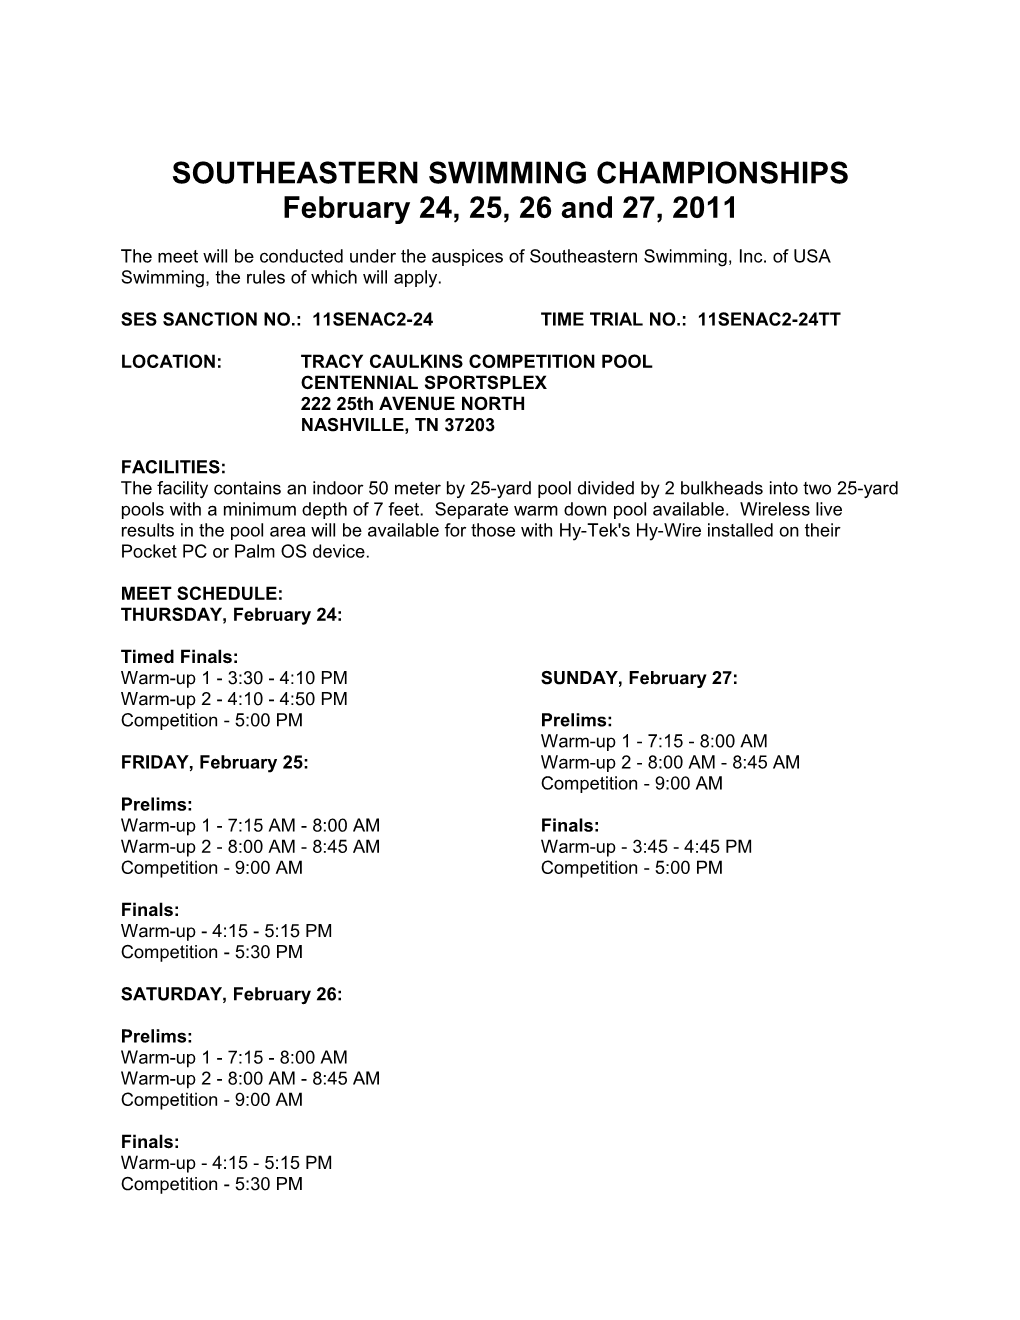 Southeastern Swimming Championships